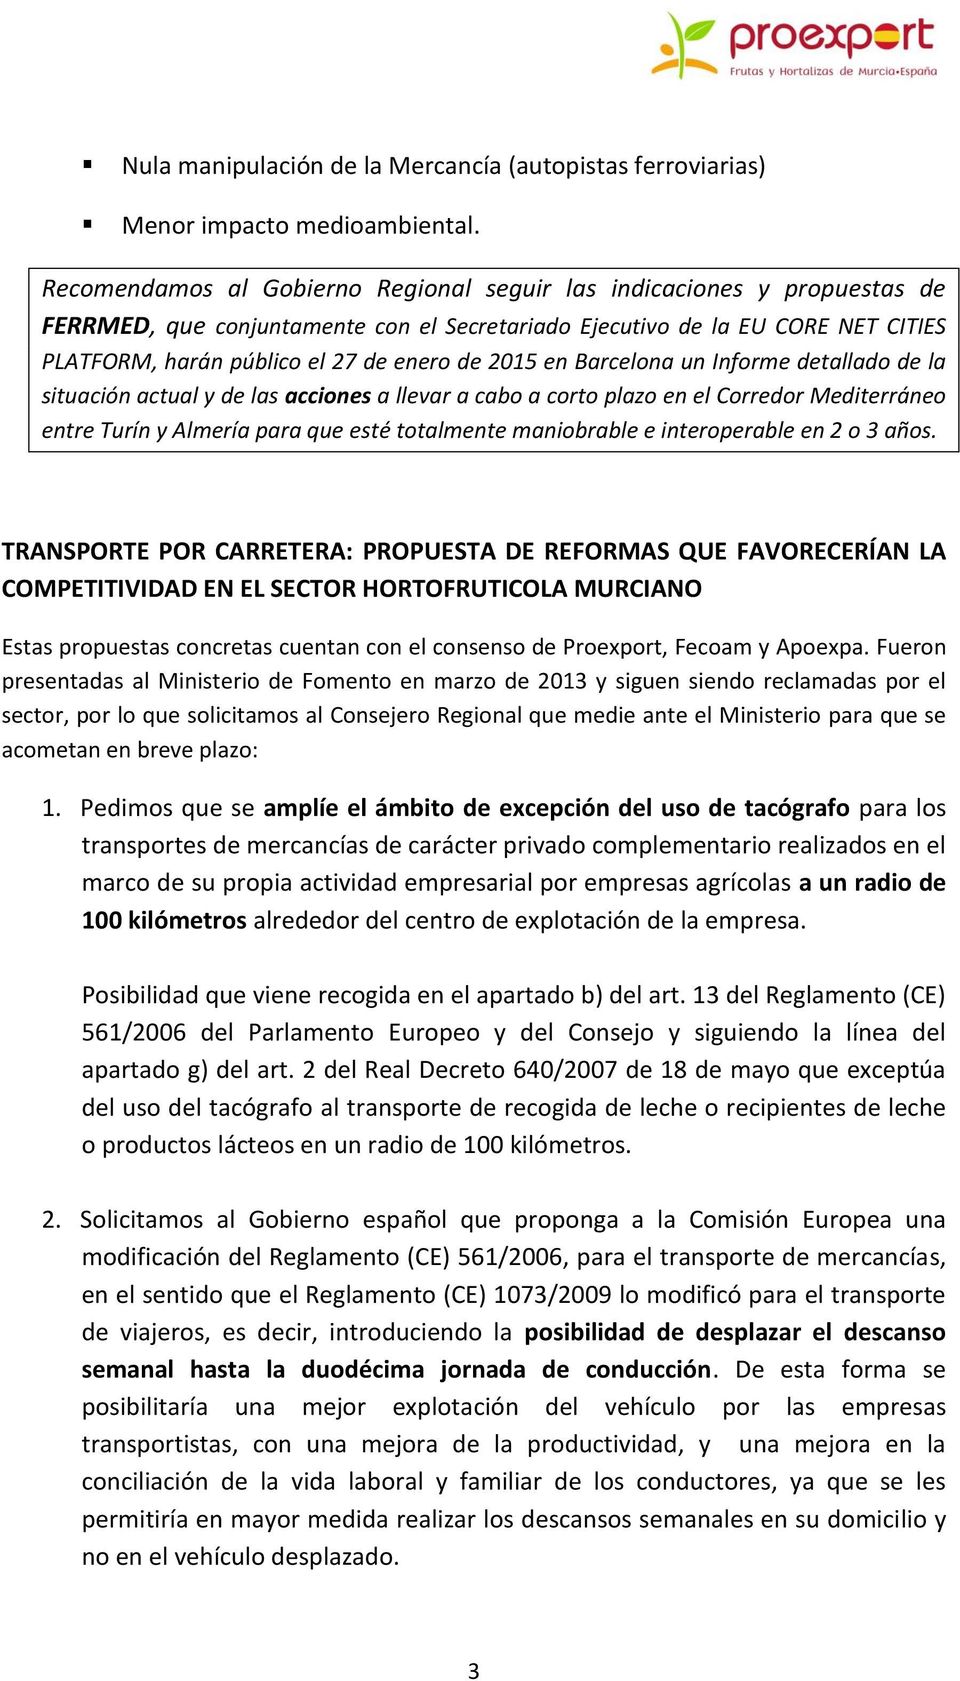 2015 en Barcelona un Informe detallado de la situación actual y de las acciones a llevar a cabo a corto plazo en el Corredor Mediterráneo entre Turín y Almería para que esté totalmente maniobrable e